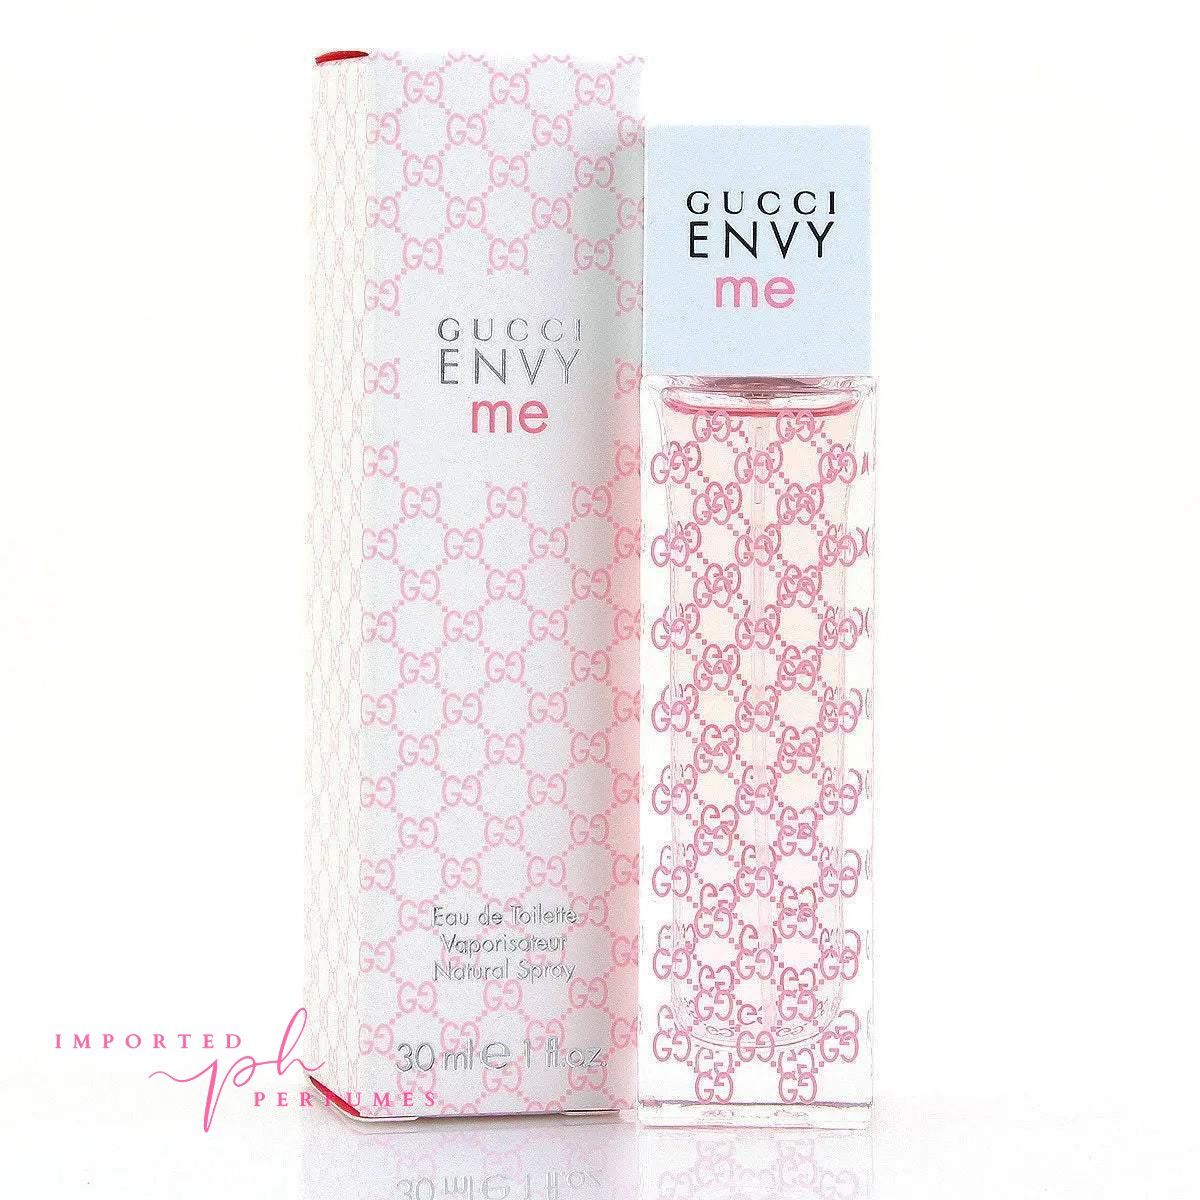 Envy Me By Gucci For Women 100ml Eau De Toilette-Imported Perfumes Co-Envy Me,Gucci,Gucci Women